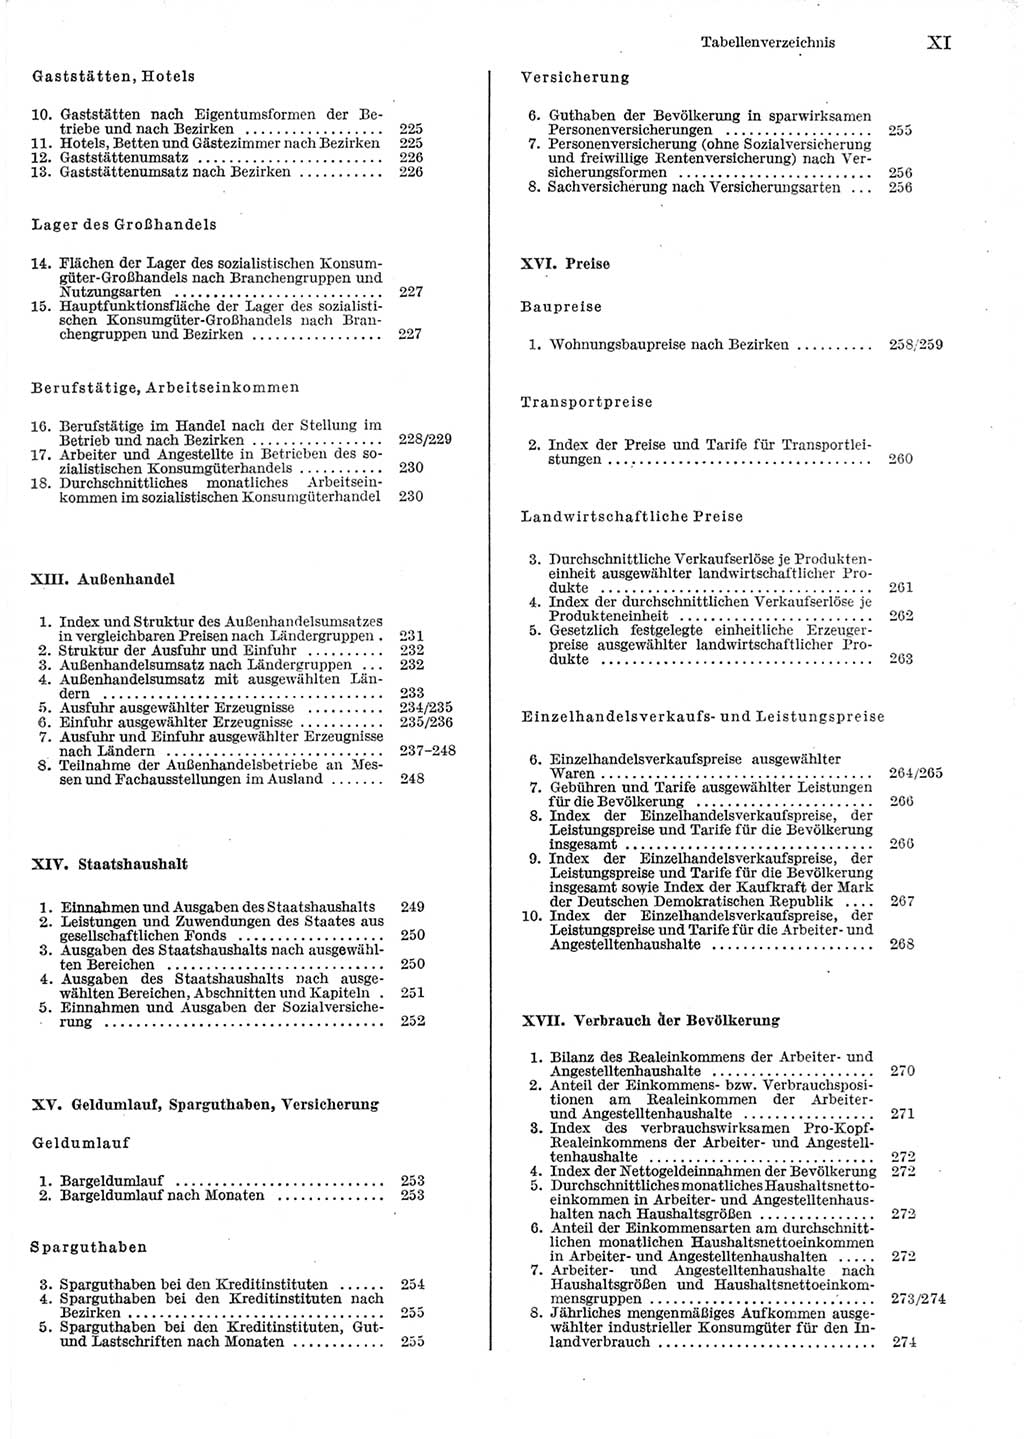 Statistisches Jahrbuch der Deutschen Demokratischen Republik (DDR) 1979, Seite 11 (Stat. Jb. DDR 1979, S. 11)